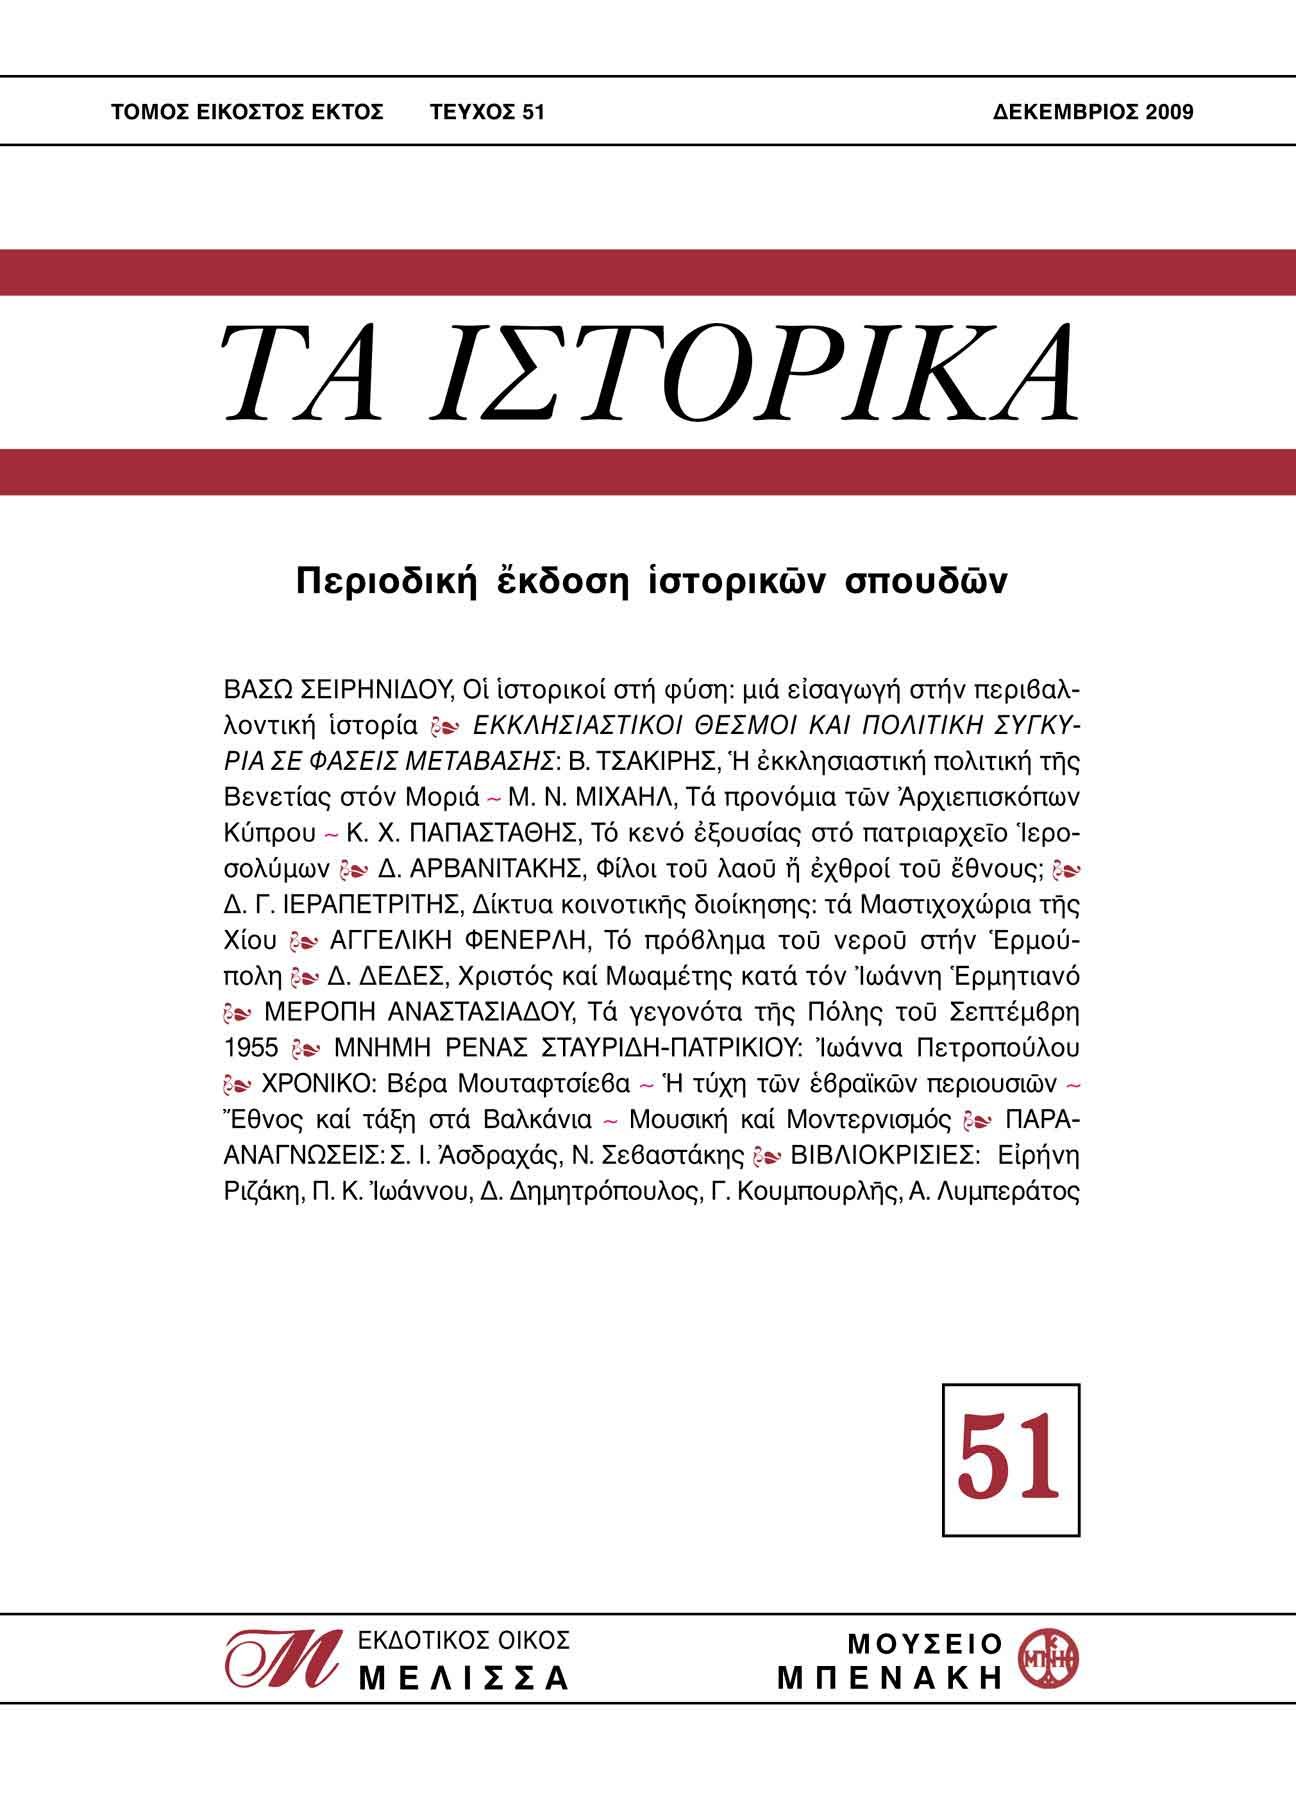 ΤΑ ΙΣΤΟΡΙΚΑ, τεύχος 51 (TA ISTORIKA, issue 51)